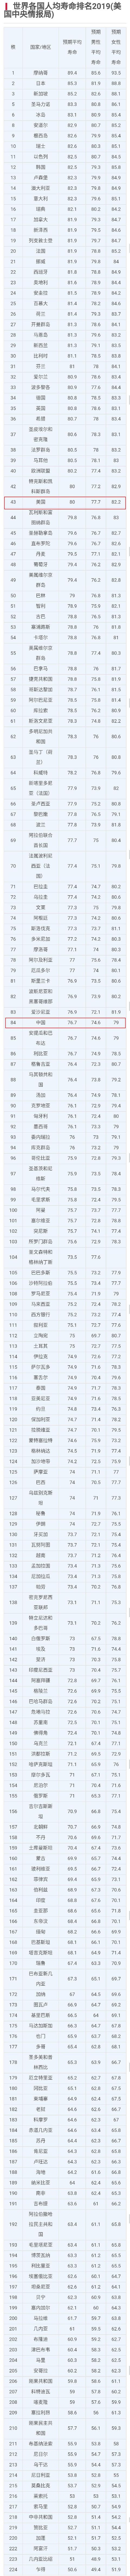 世界寿命排行榜_世界各国人均寿命排名,中国作为一个发展中国家非常不错了